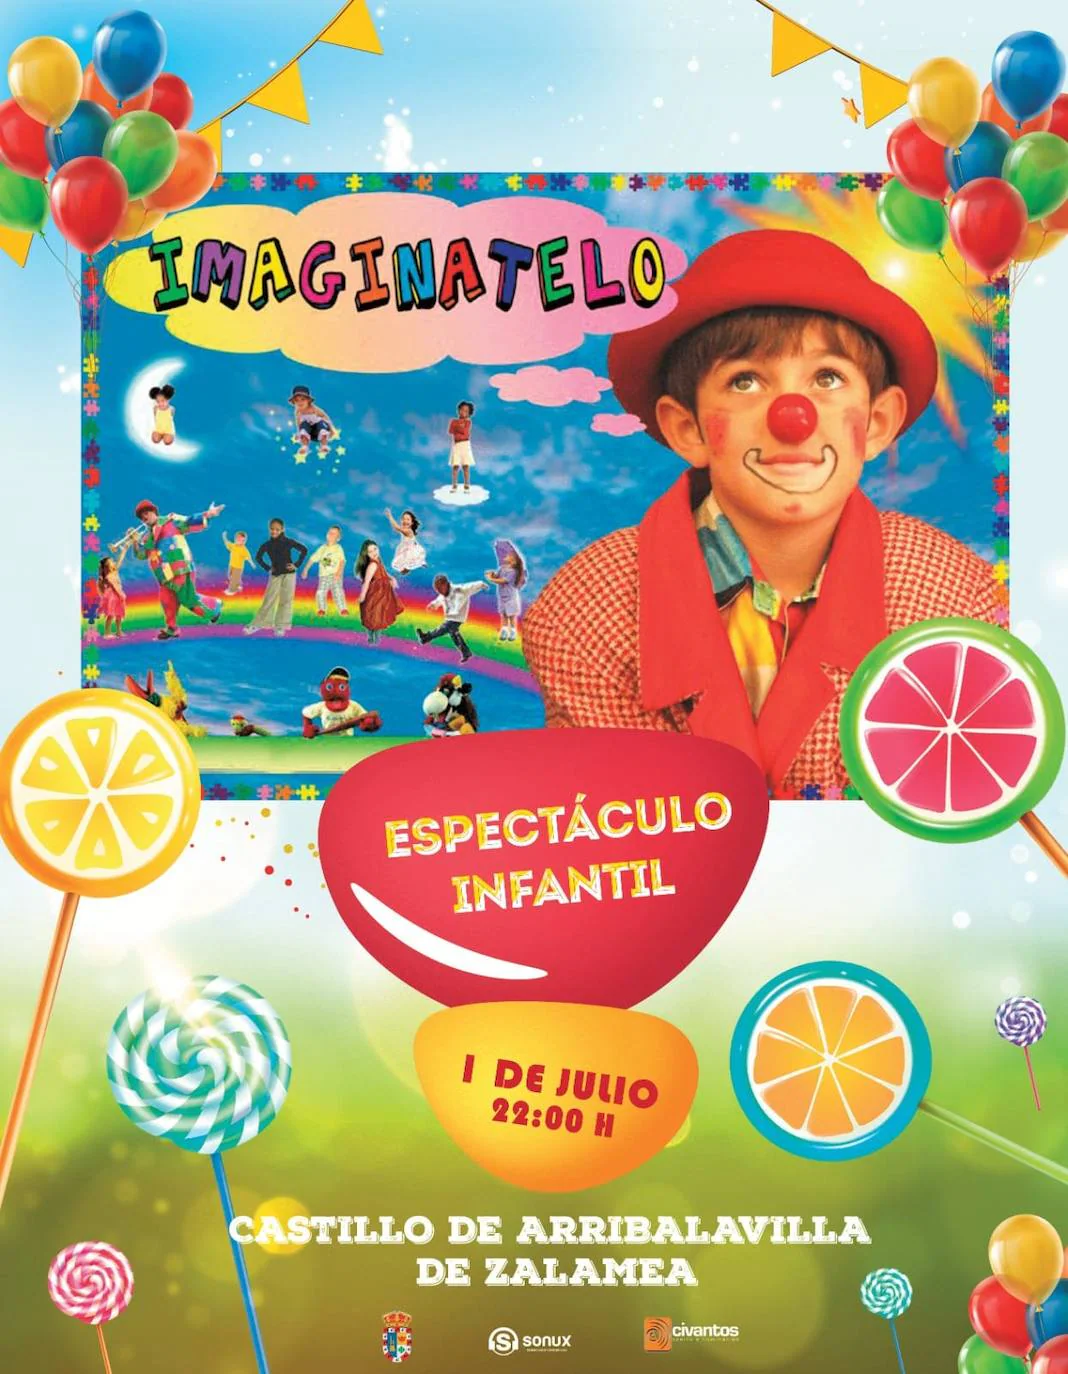 El espectáculo infantil 'Imagínatelo' llega este viernes al Castillo de Arribalavilla